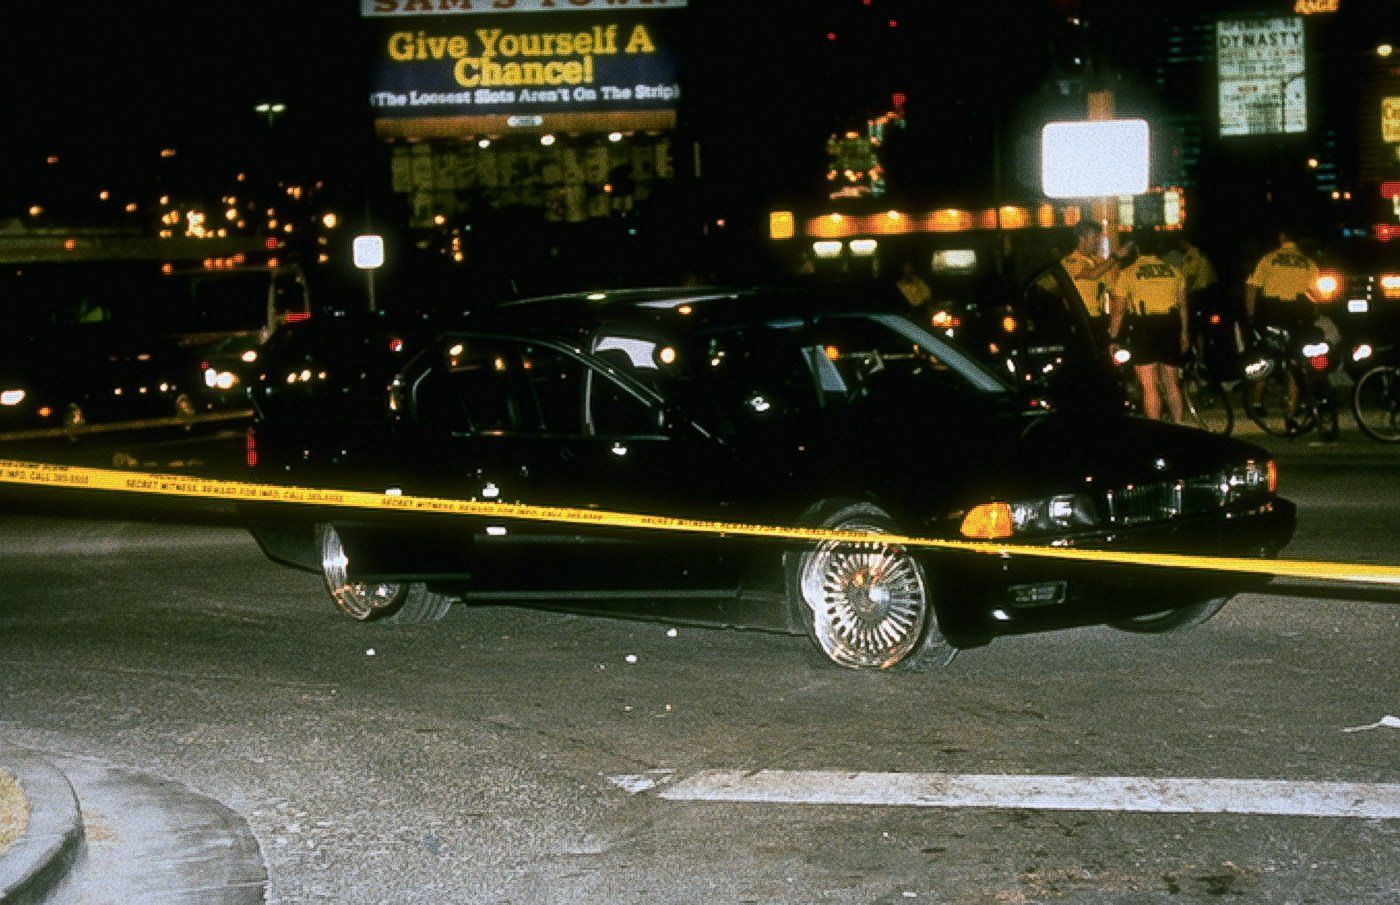 2pac-tupac-murdered-in-this-car-vehicle-1996-las-vegas-2.jpg